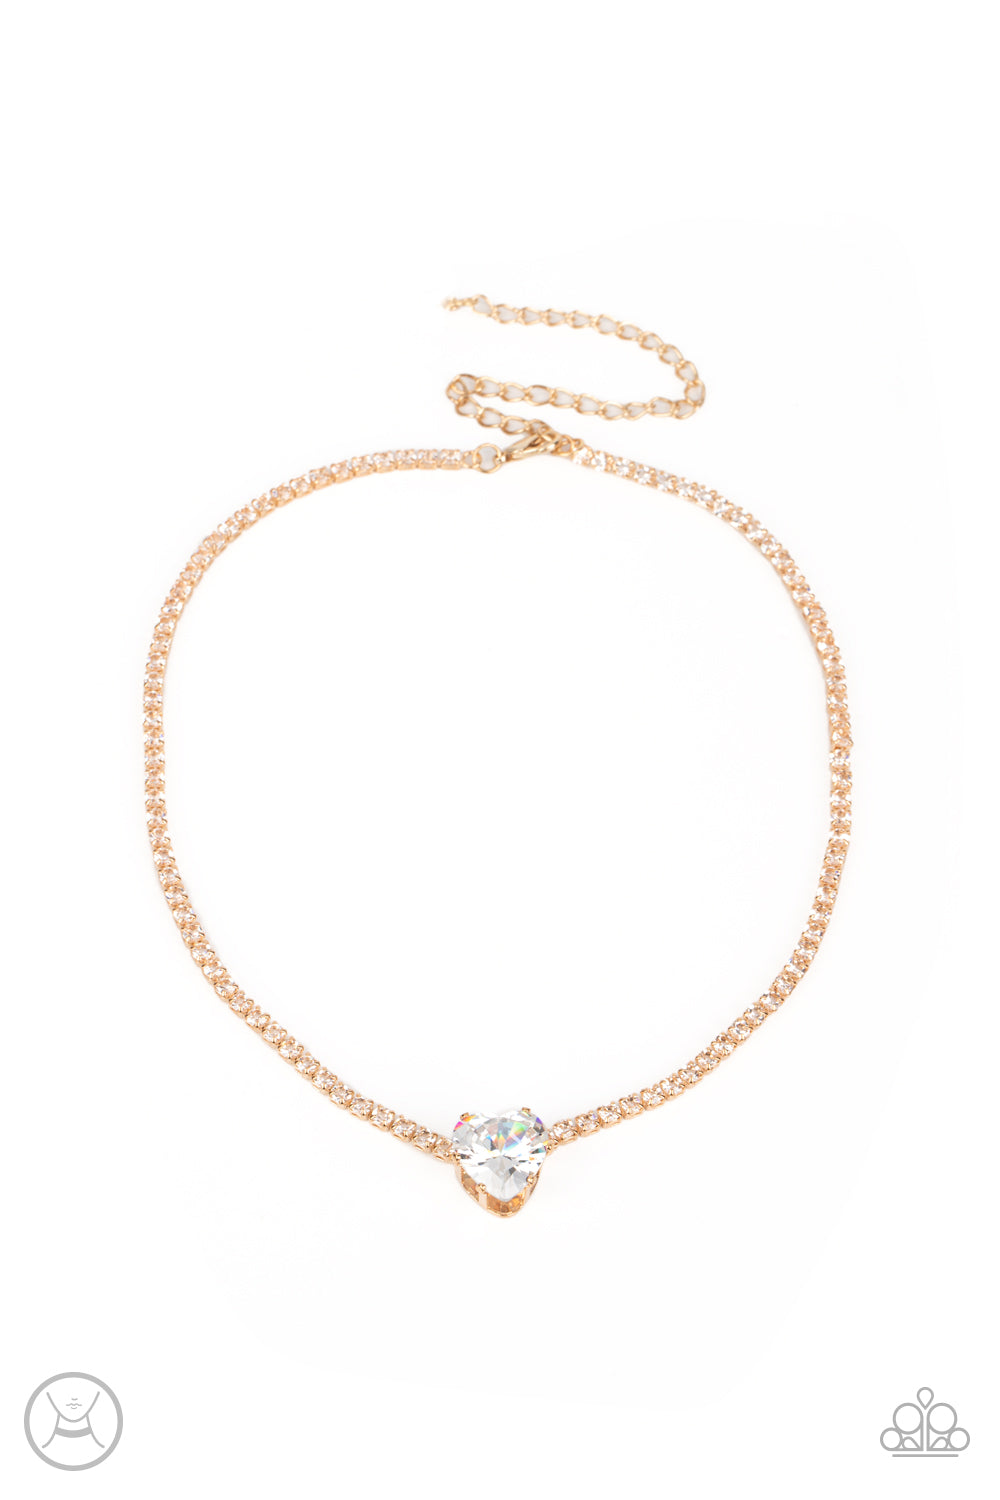 Flirty Fiancé & Bedazzled Beauty - Gold Necklace Set & Bracelet Combo - Princess Glam Shop